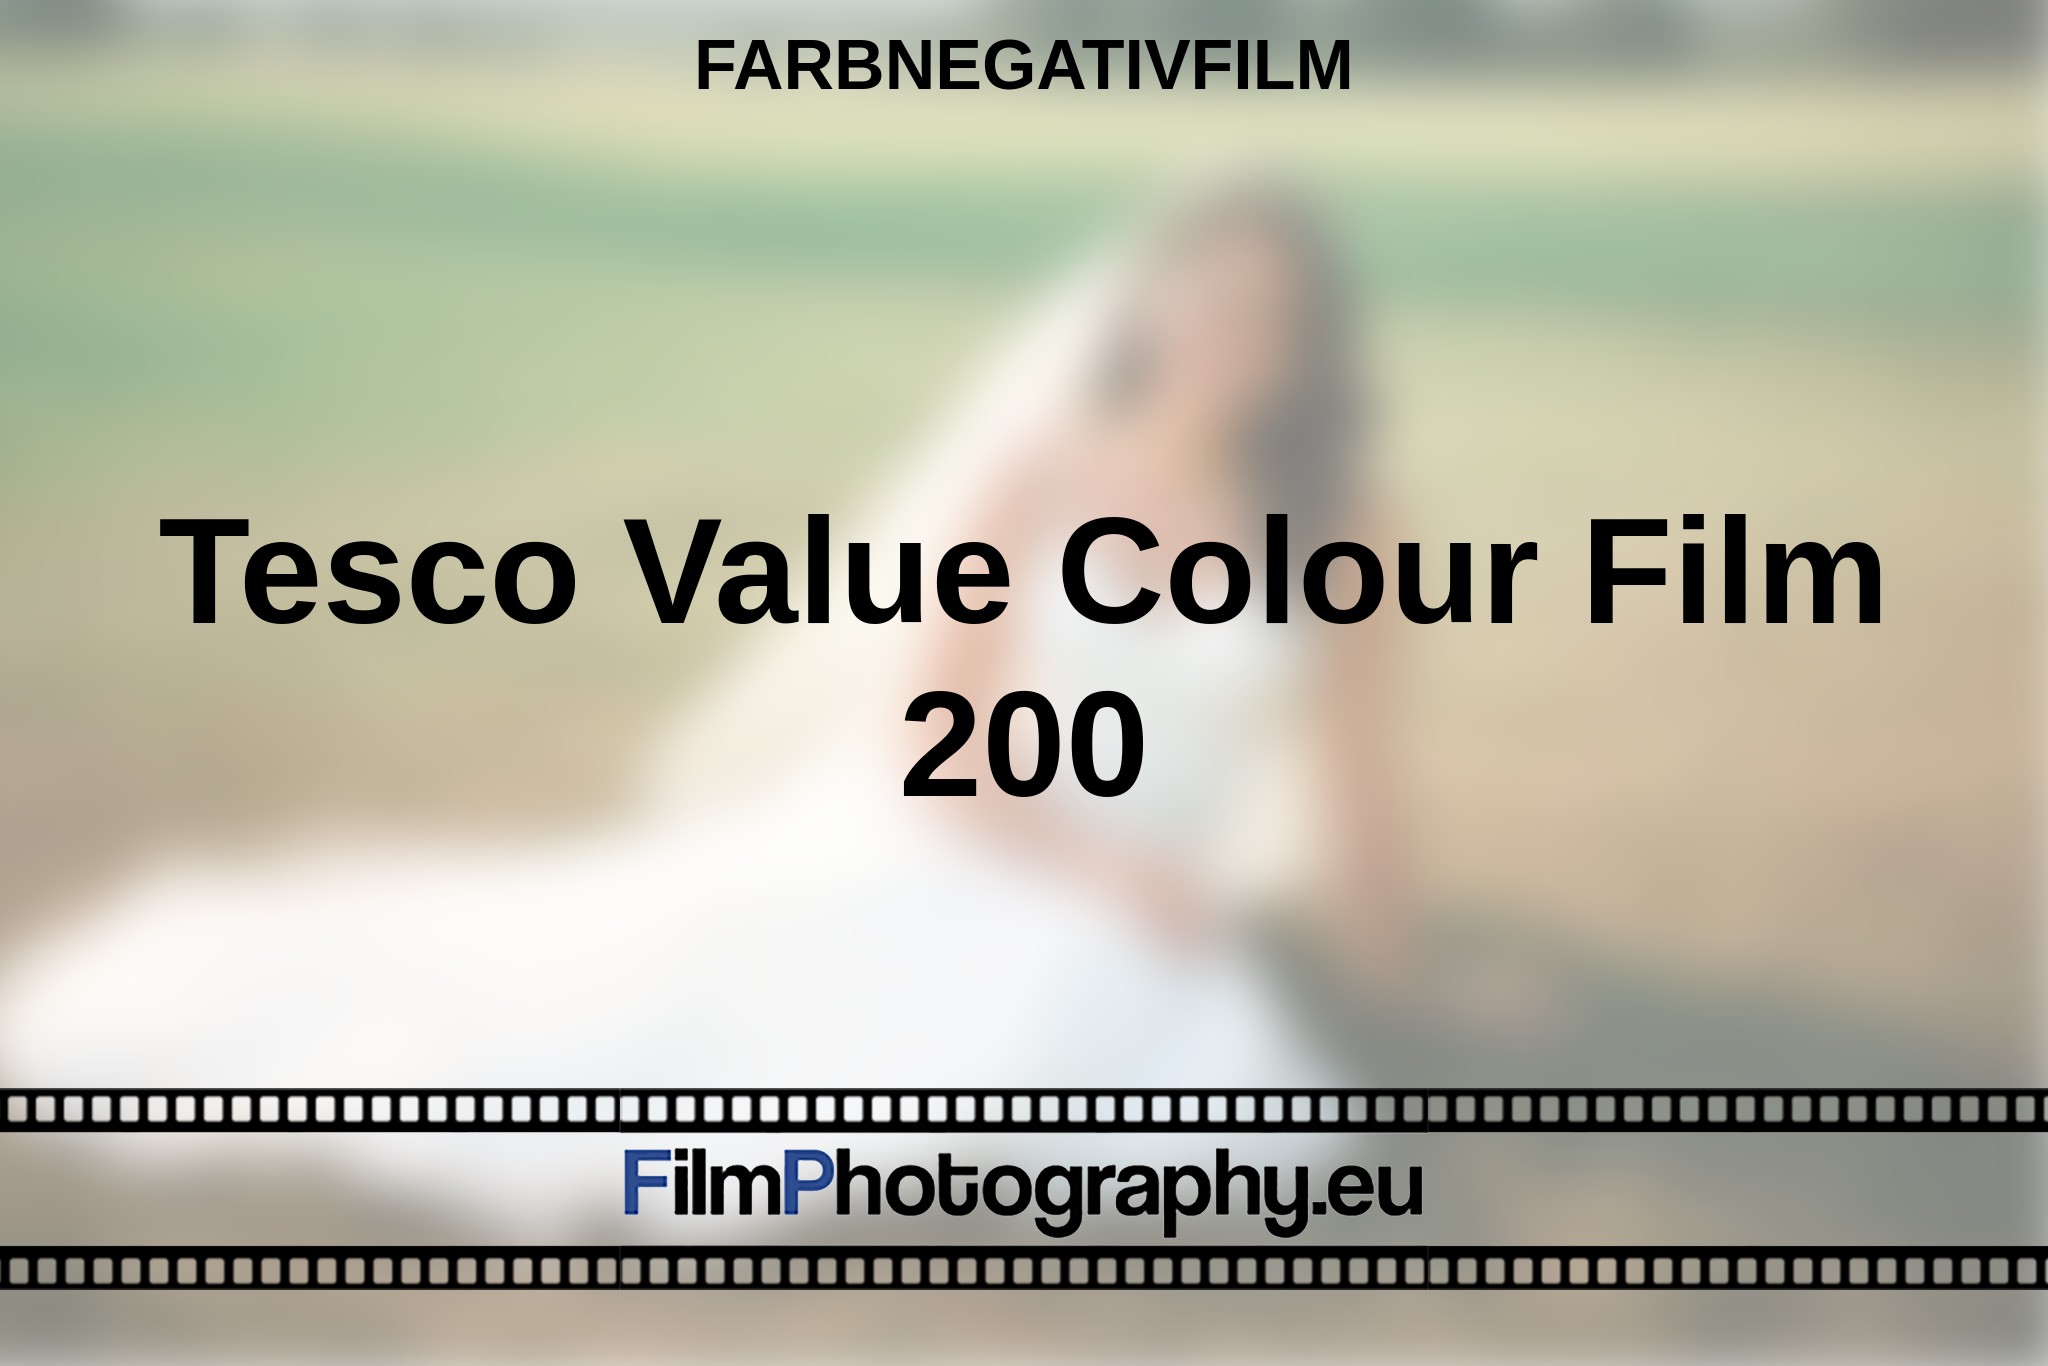 tesco-value-colour-film-200-farbnegativfilm-bnv.jpg